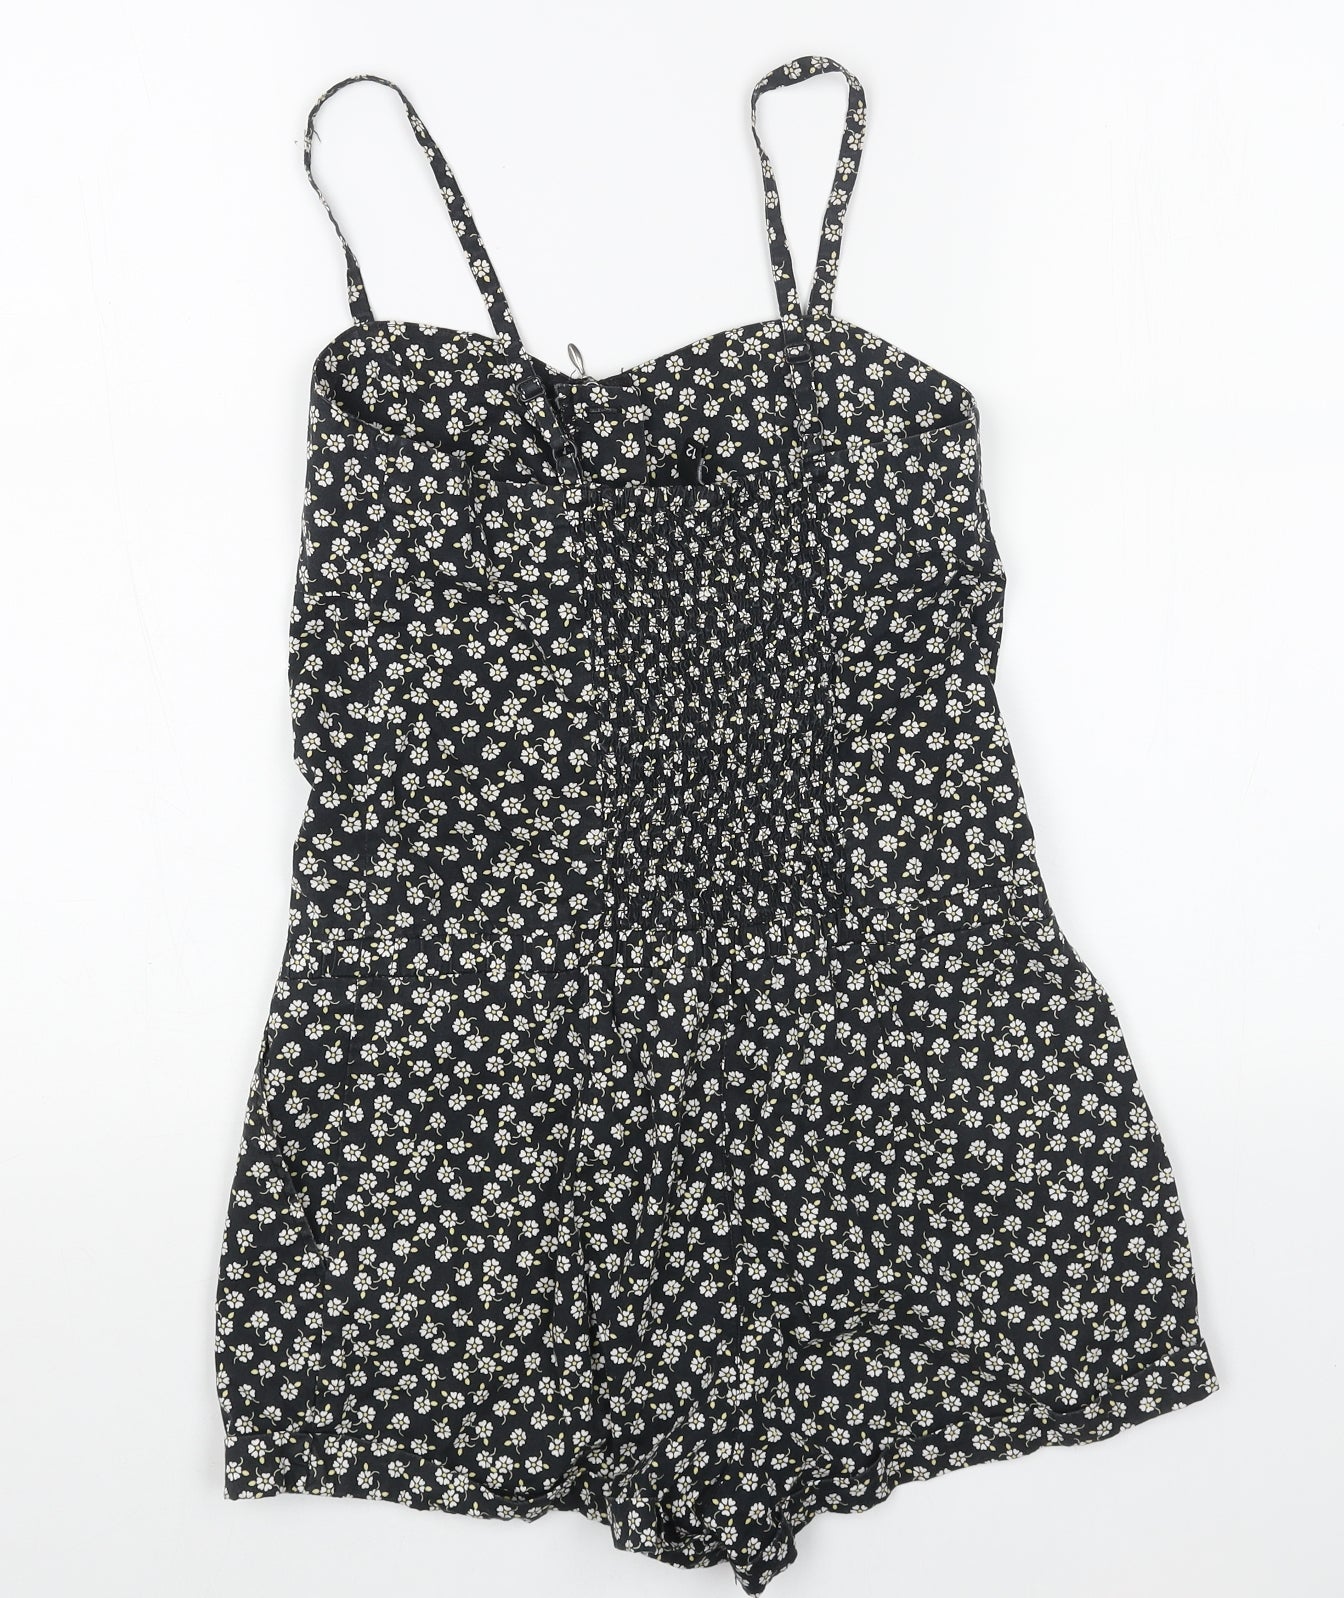 H&M Womens Black Floral Cotton Playsuit One-Piece Size 12 Zip